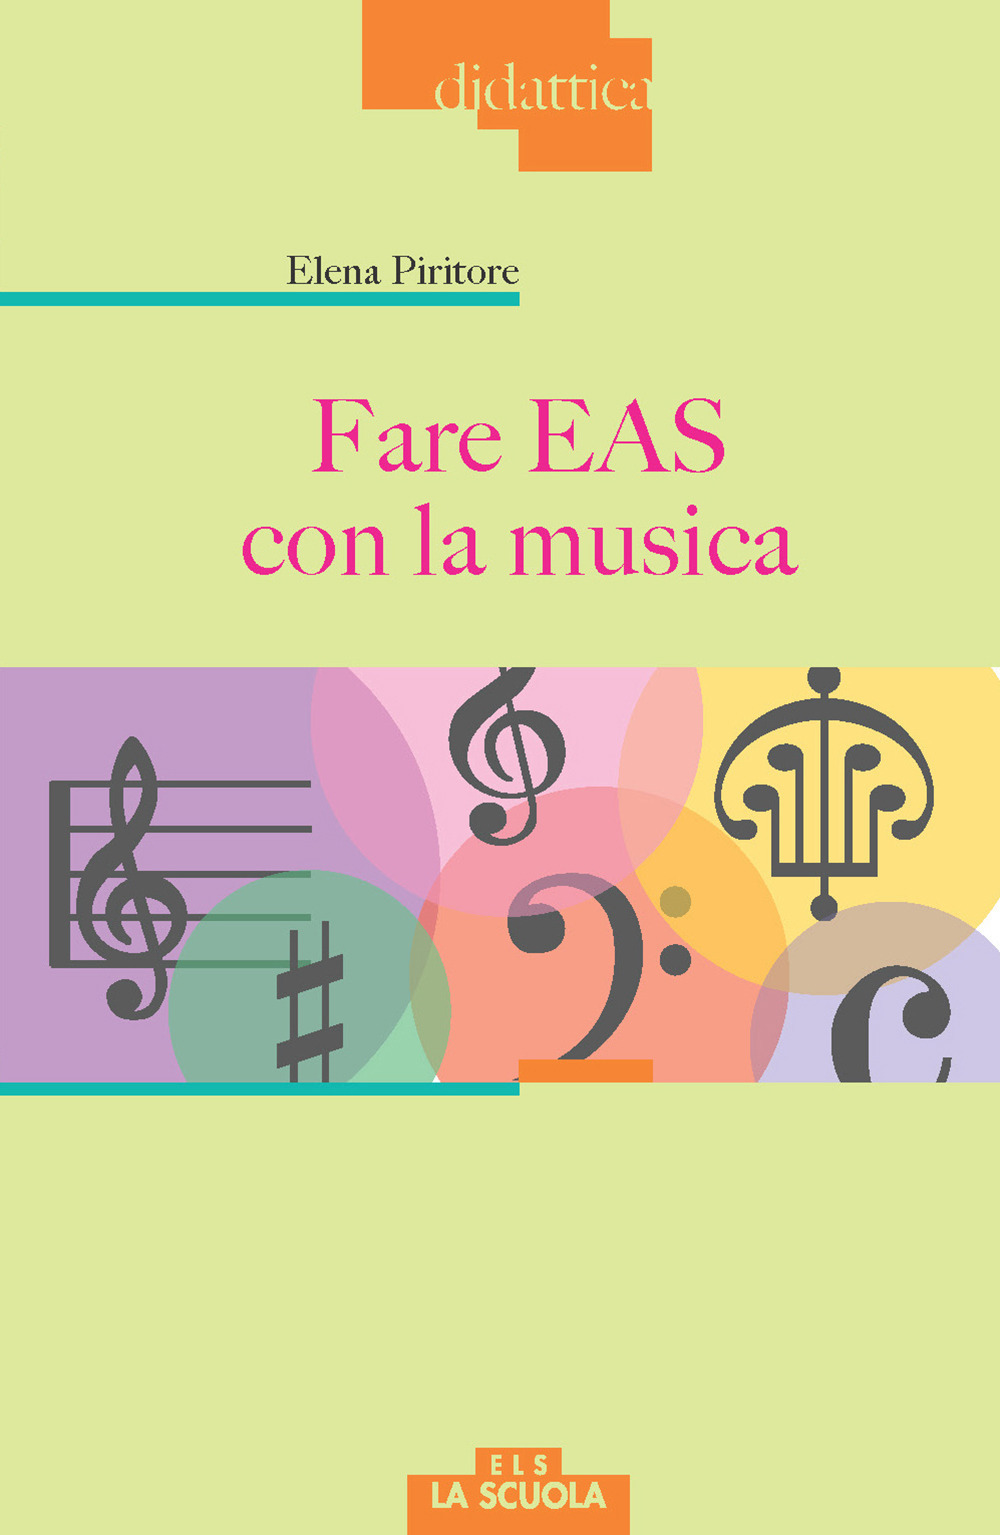 Image of Fare EAS con la musica